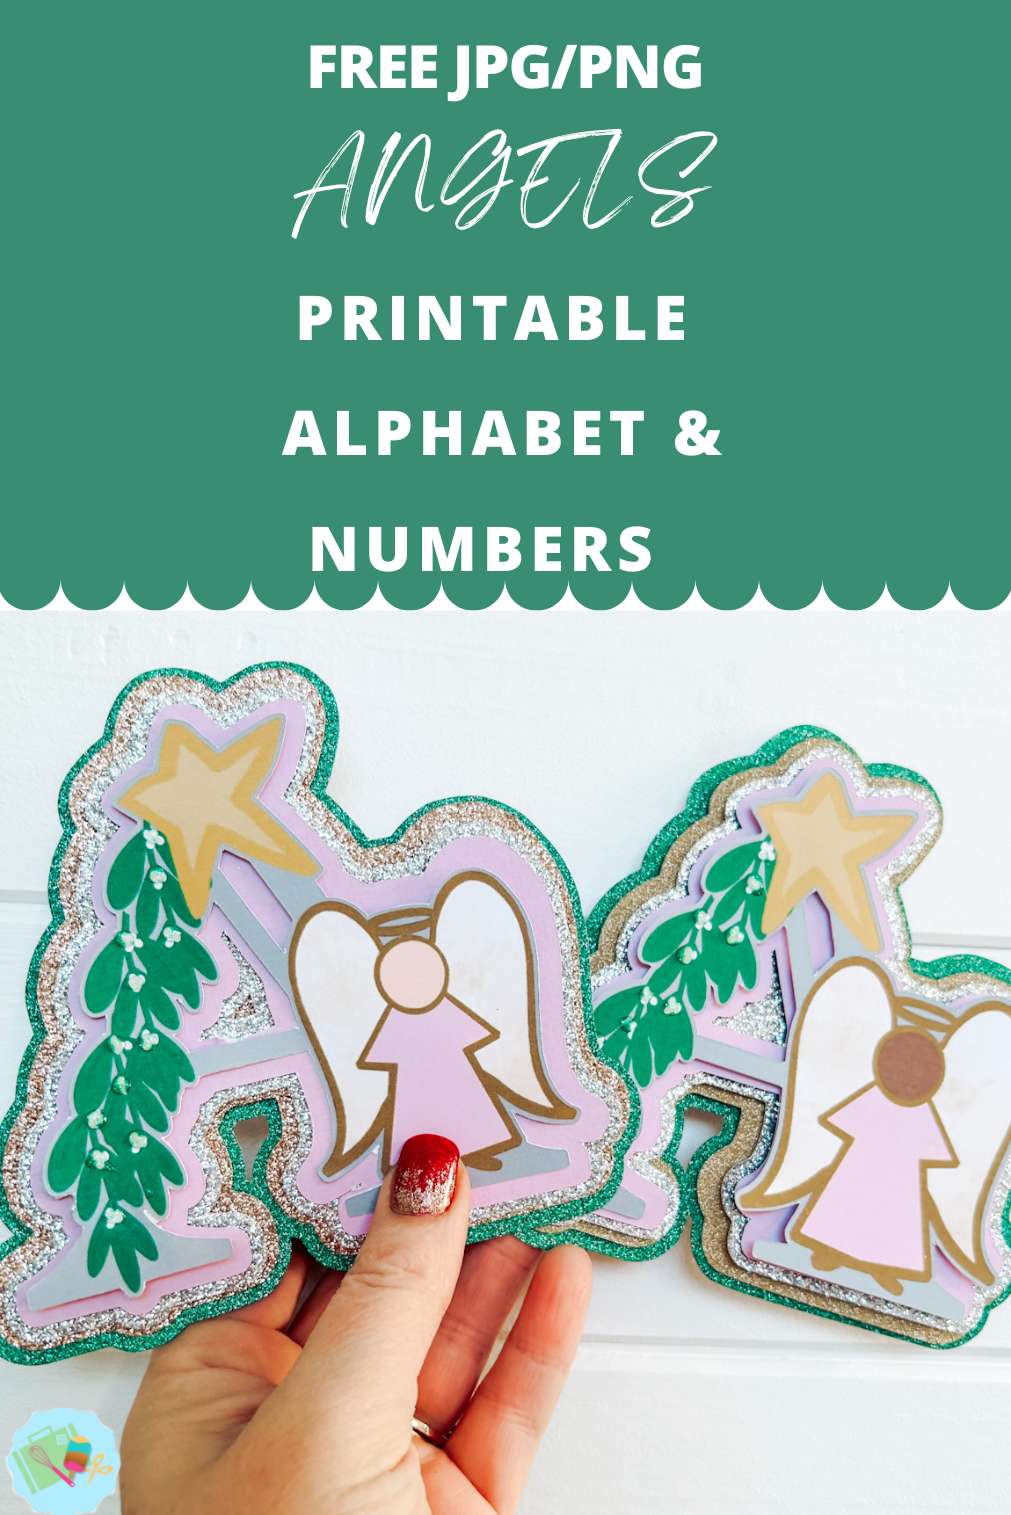 Free JPG PNG angels Printable Alphabet & Numbers